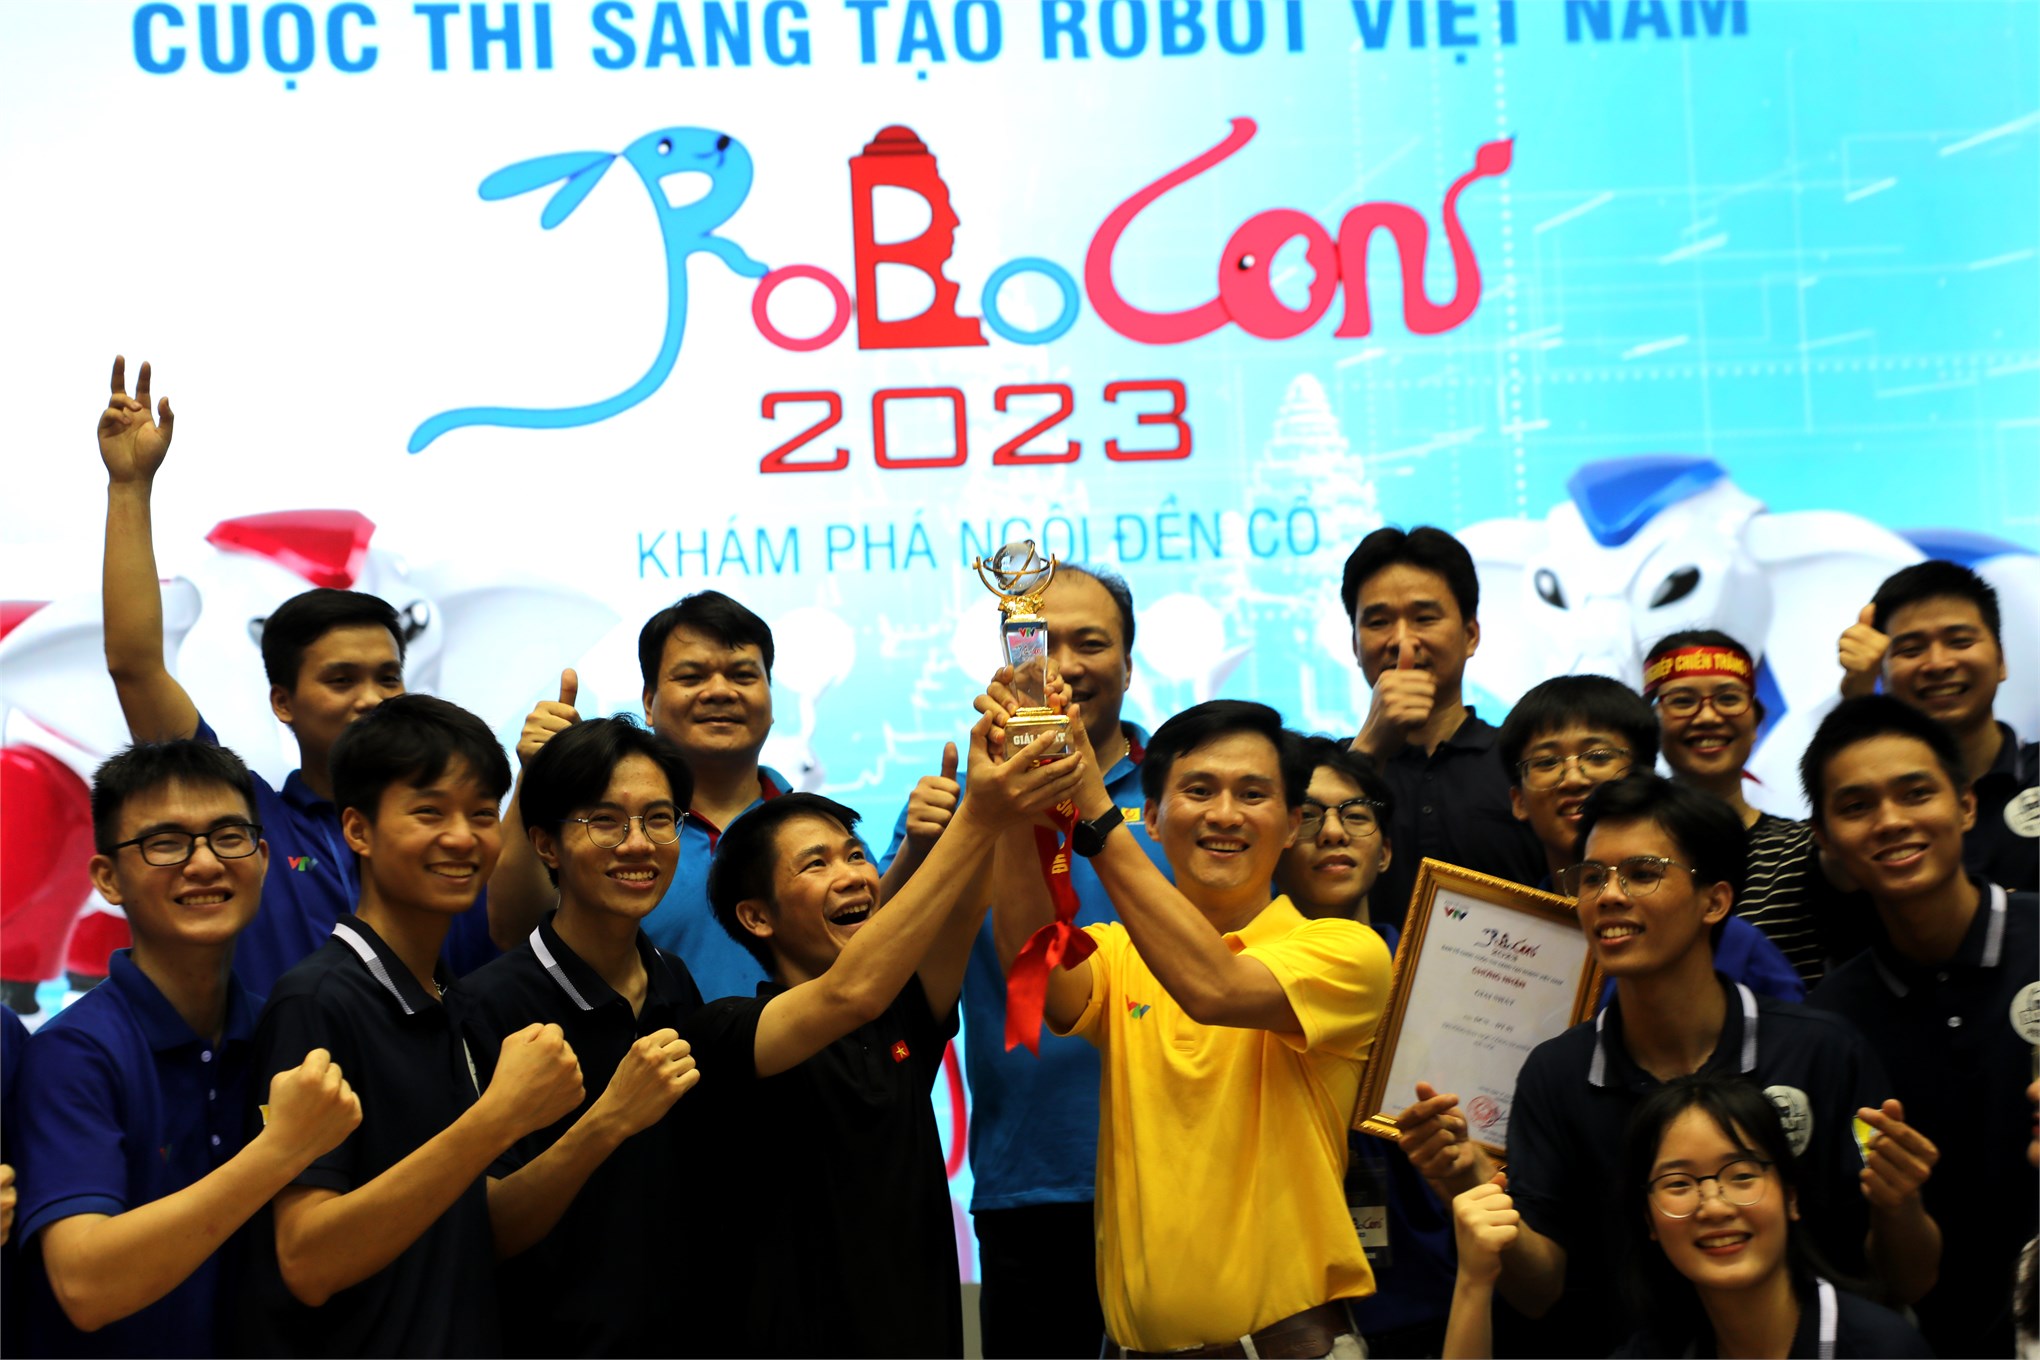 DCN-ĐT 02 Đại học Công nghiệp Hà Nội vô địch Cuộc thi Sáng tạo Robot Việt Nam năm 2023